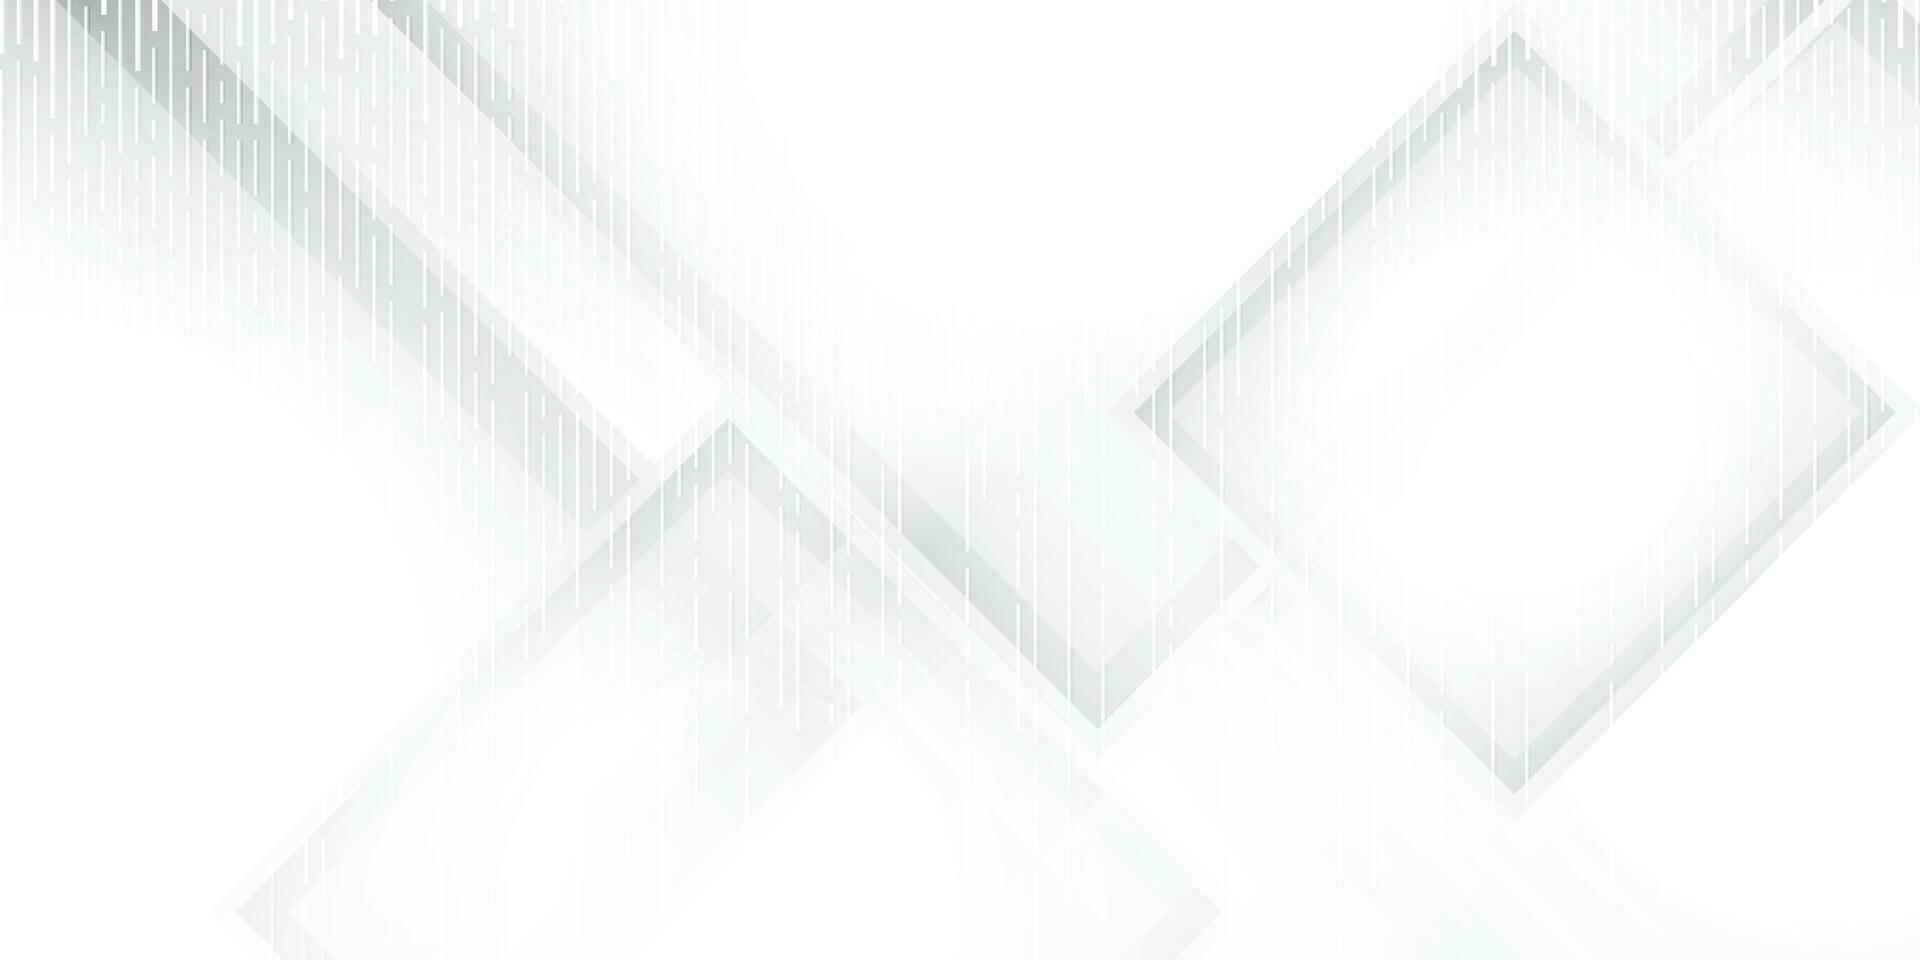 abstrakt vit och grå Färg, modern design Ränder bakgrund med geometrisk rektangel form. vektor illustration.